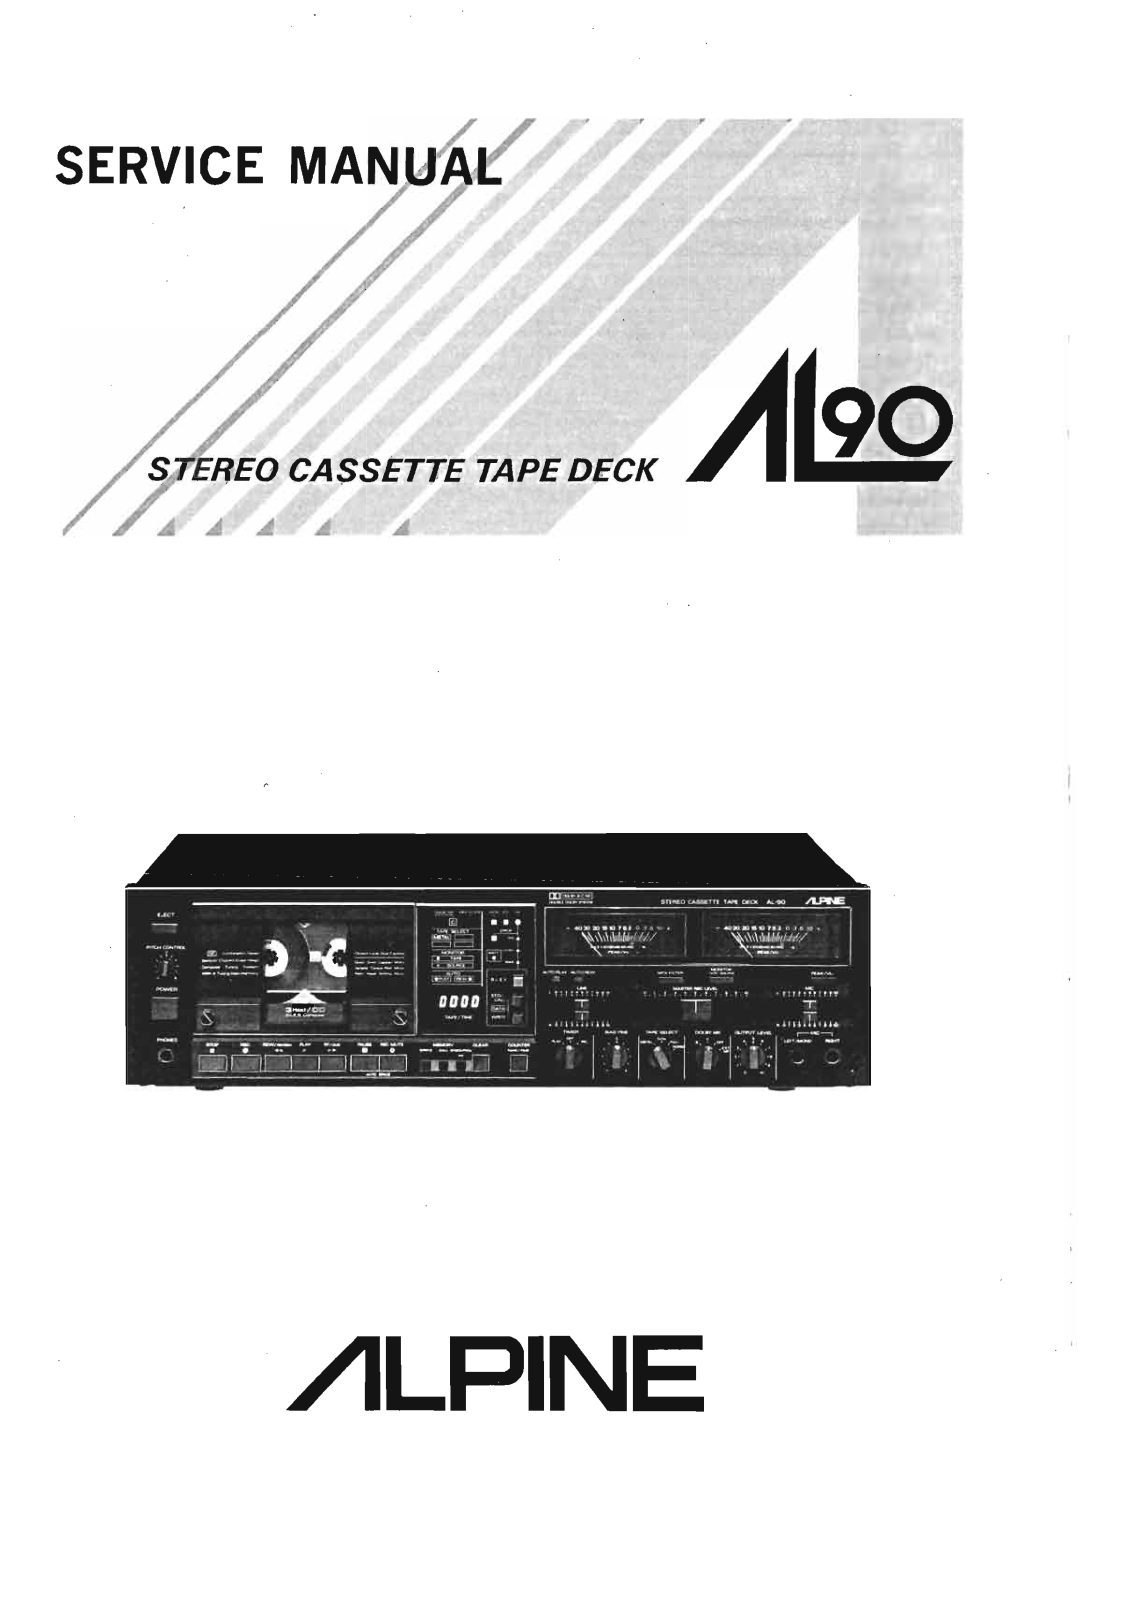 Alpine AL-90 Service Manual